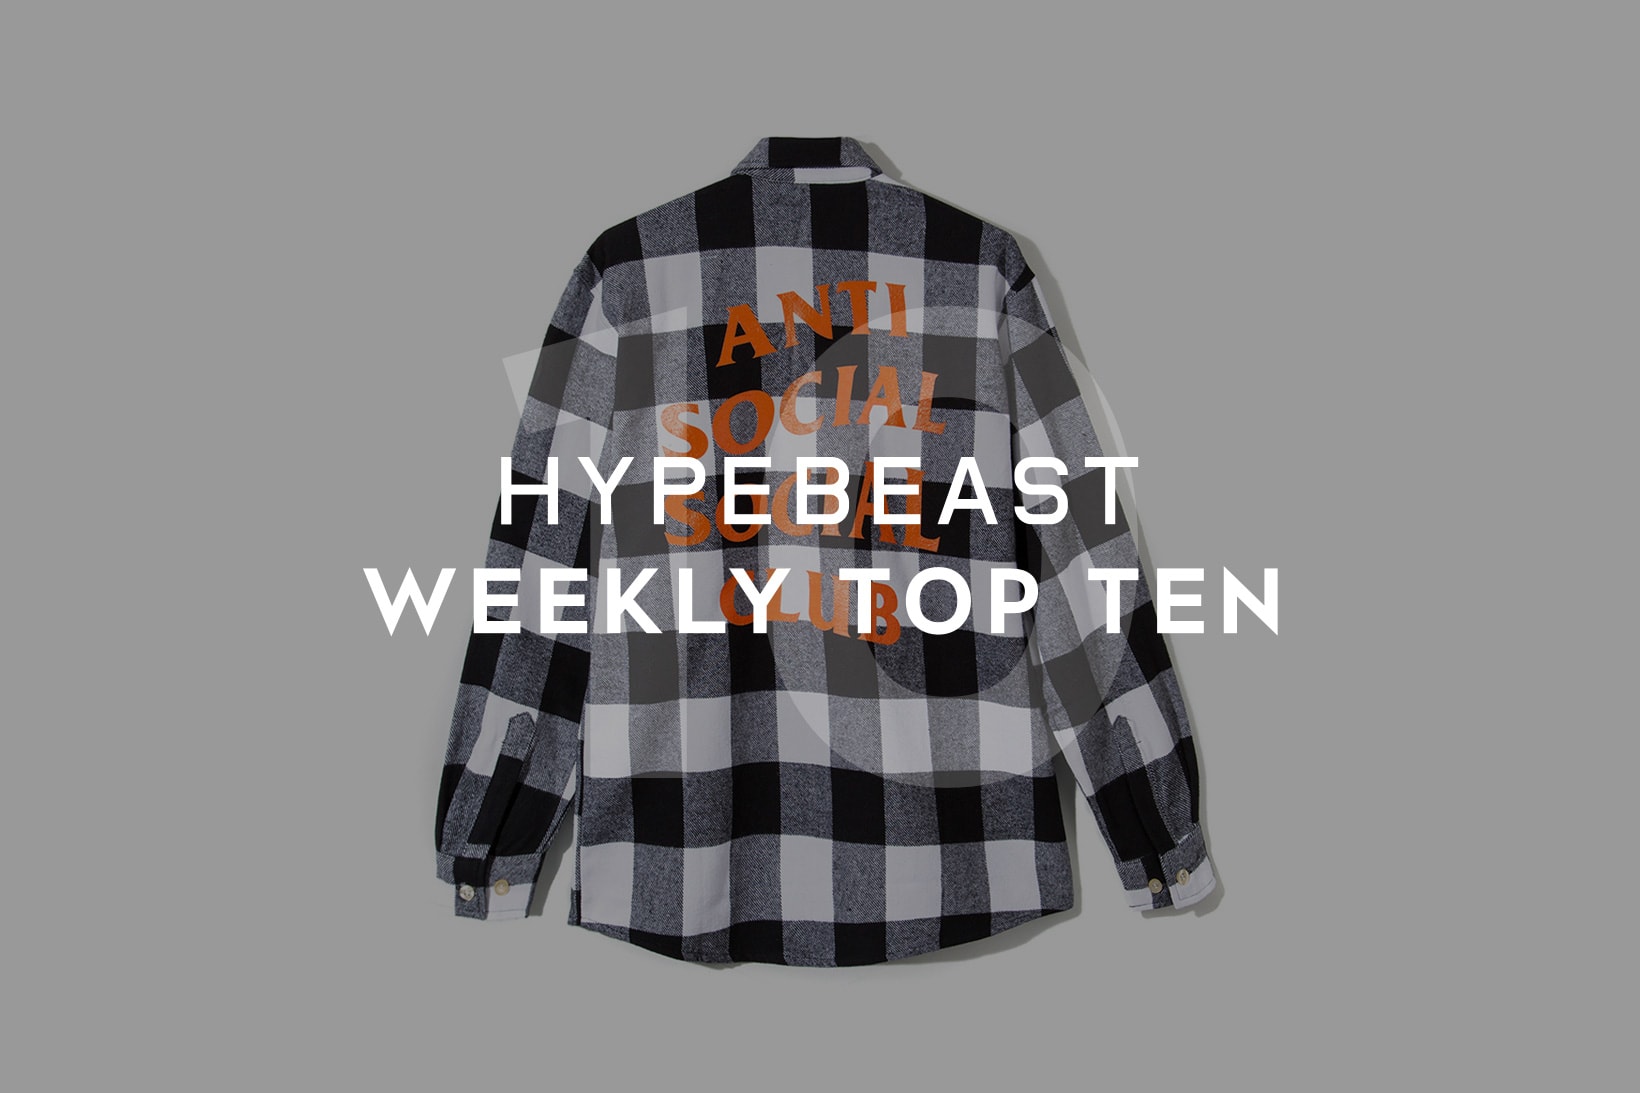 HYPEBEAST's Top 10 Posts of the Week